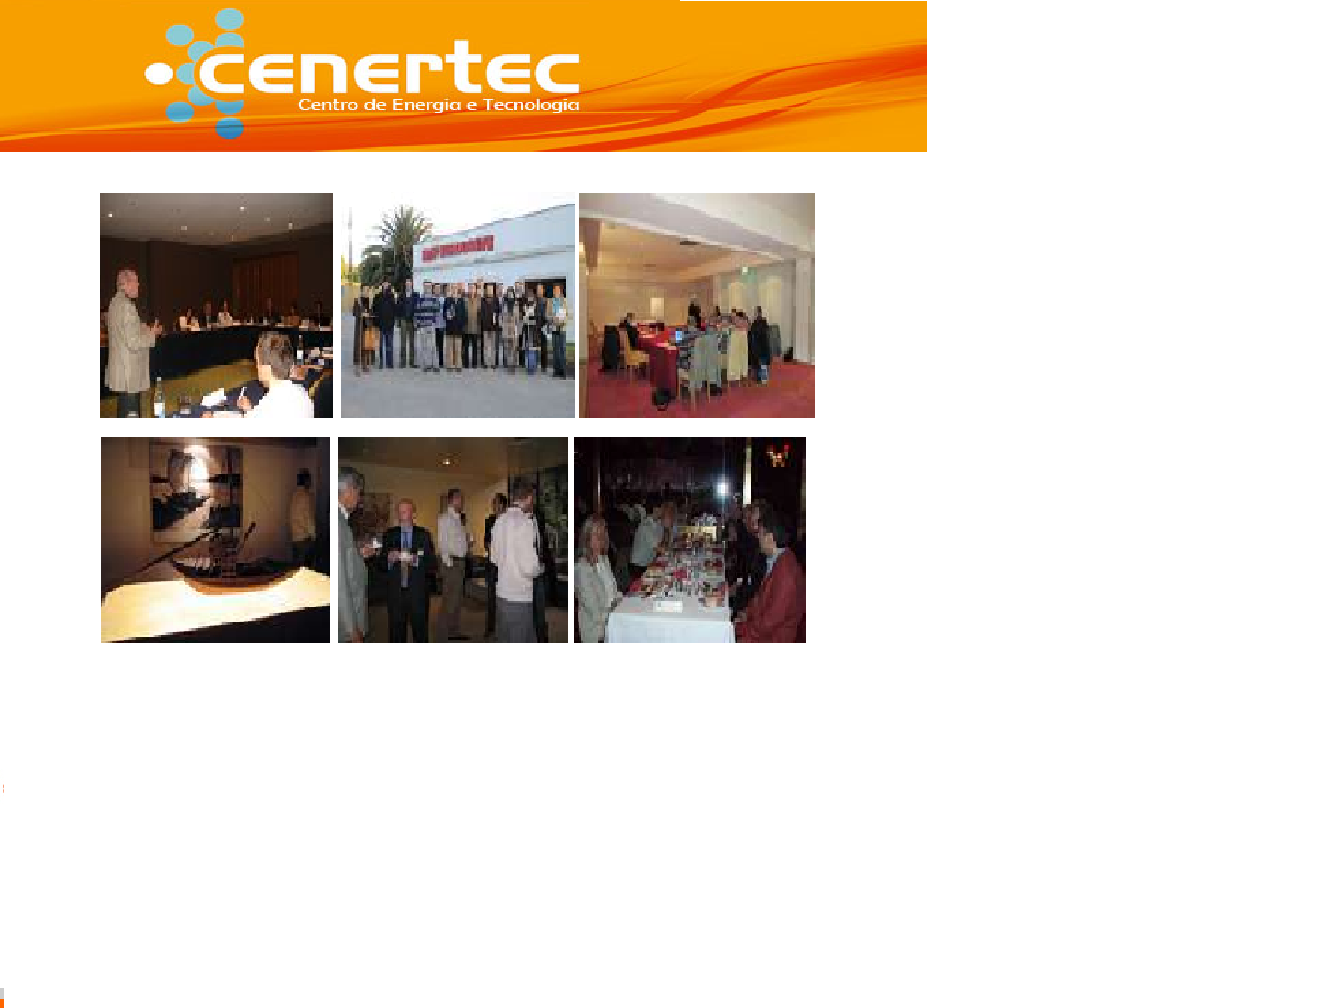 Cernetec - Centro de Energia e Tecnologia